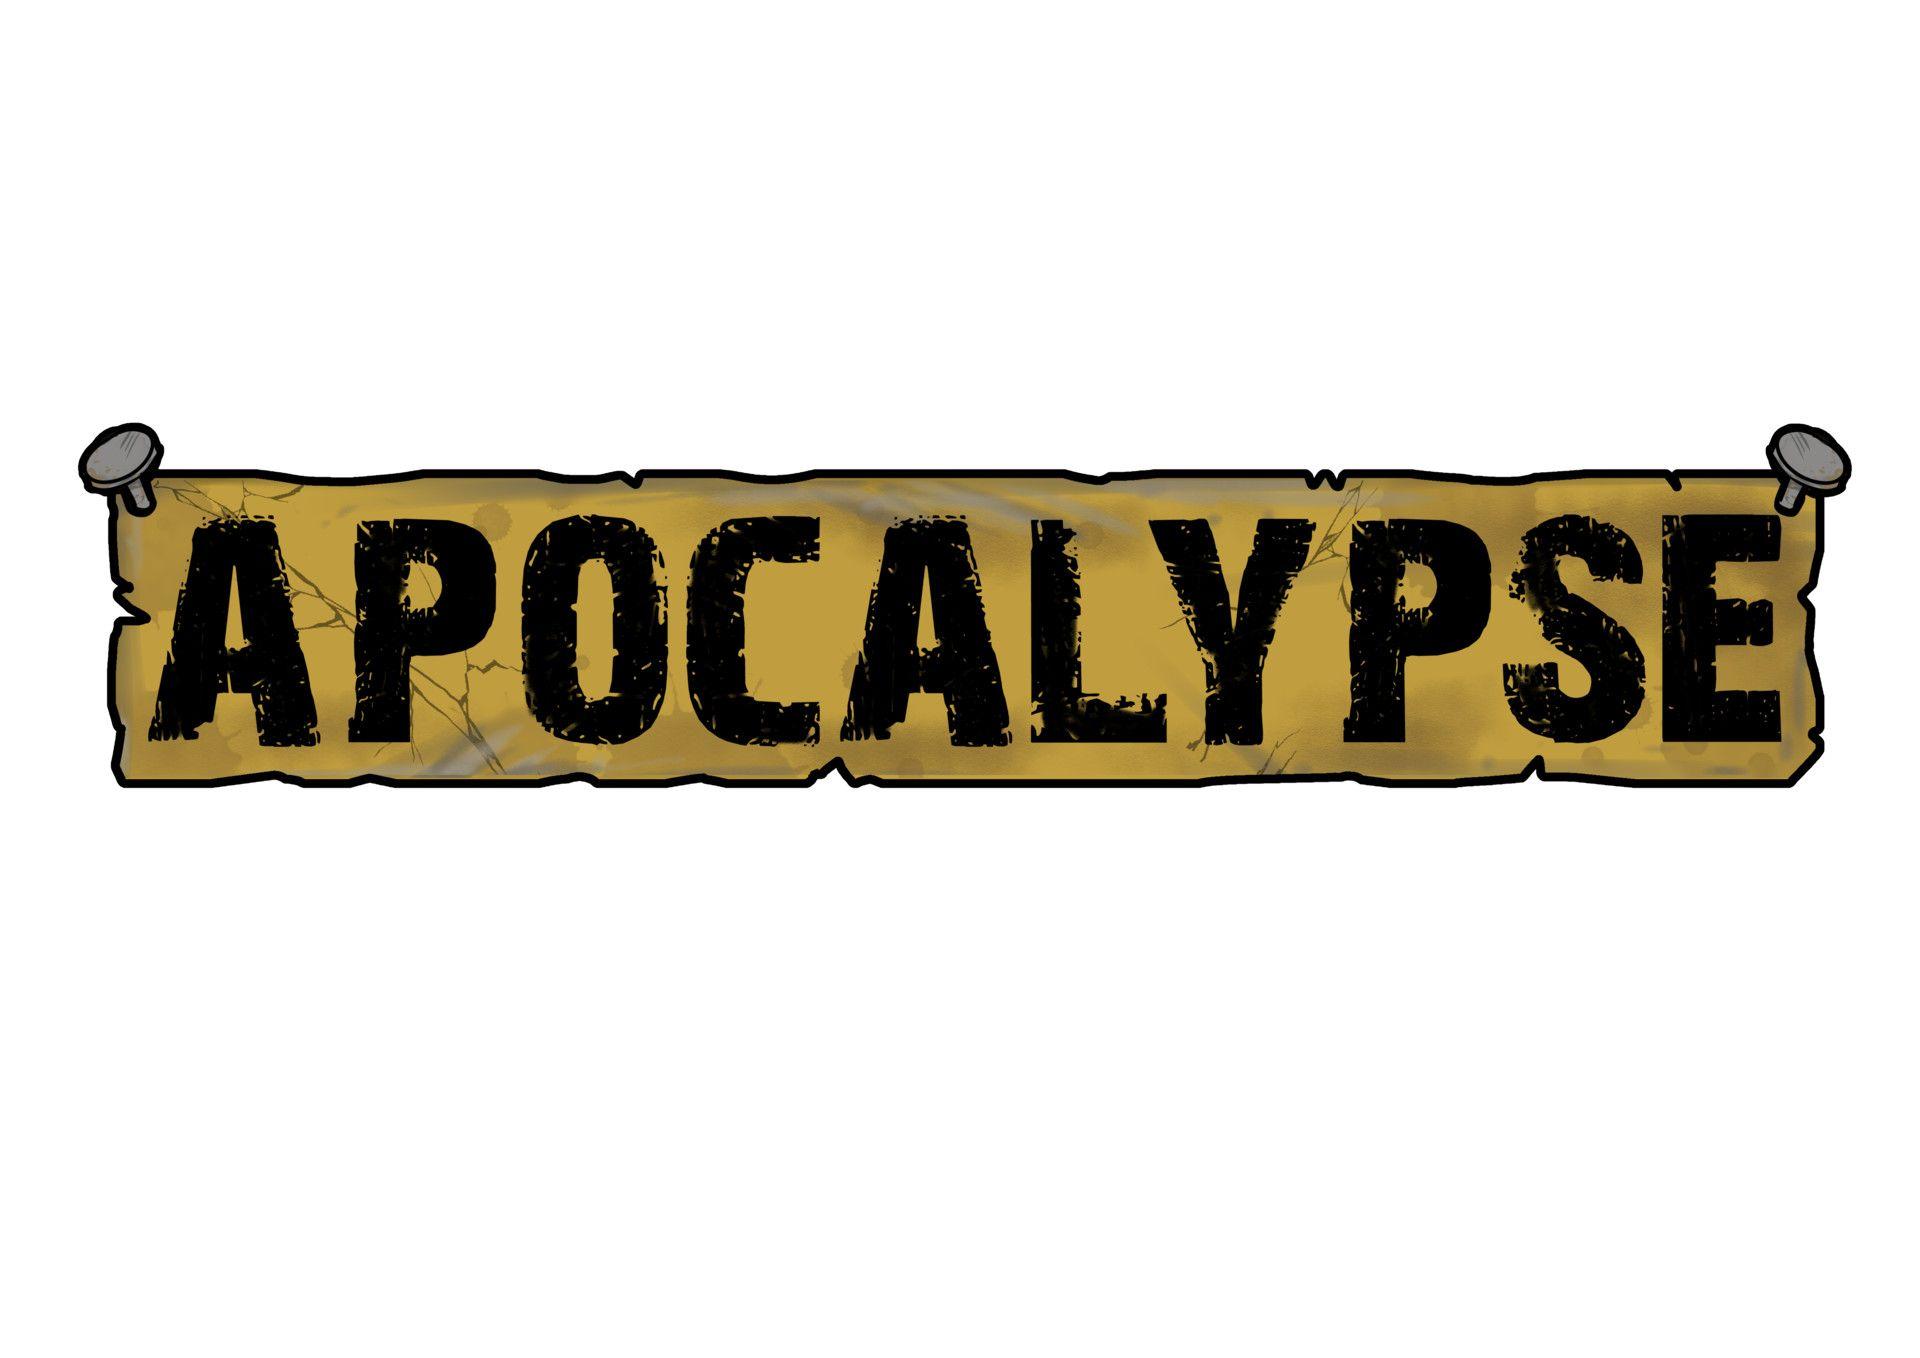 Apocalypse Logo - APOCALYPSE LOGO: robot wars, James Williams